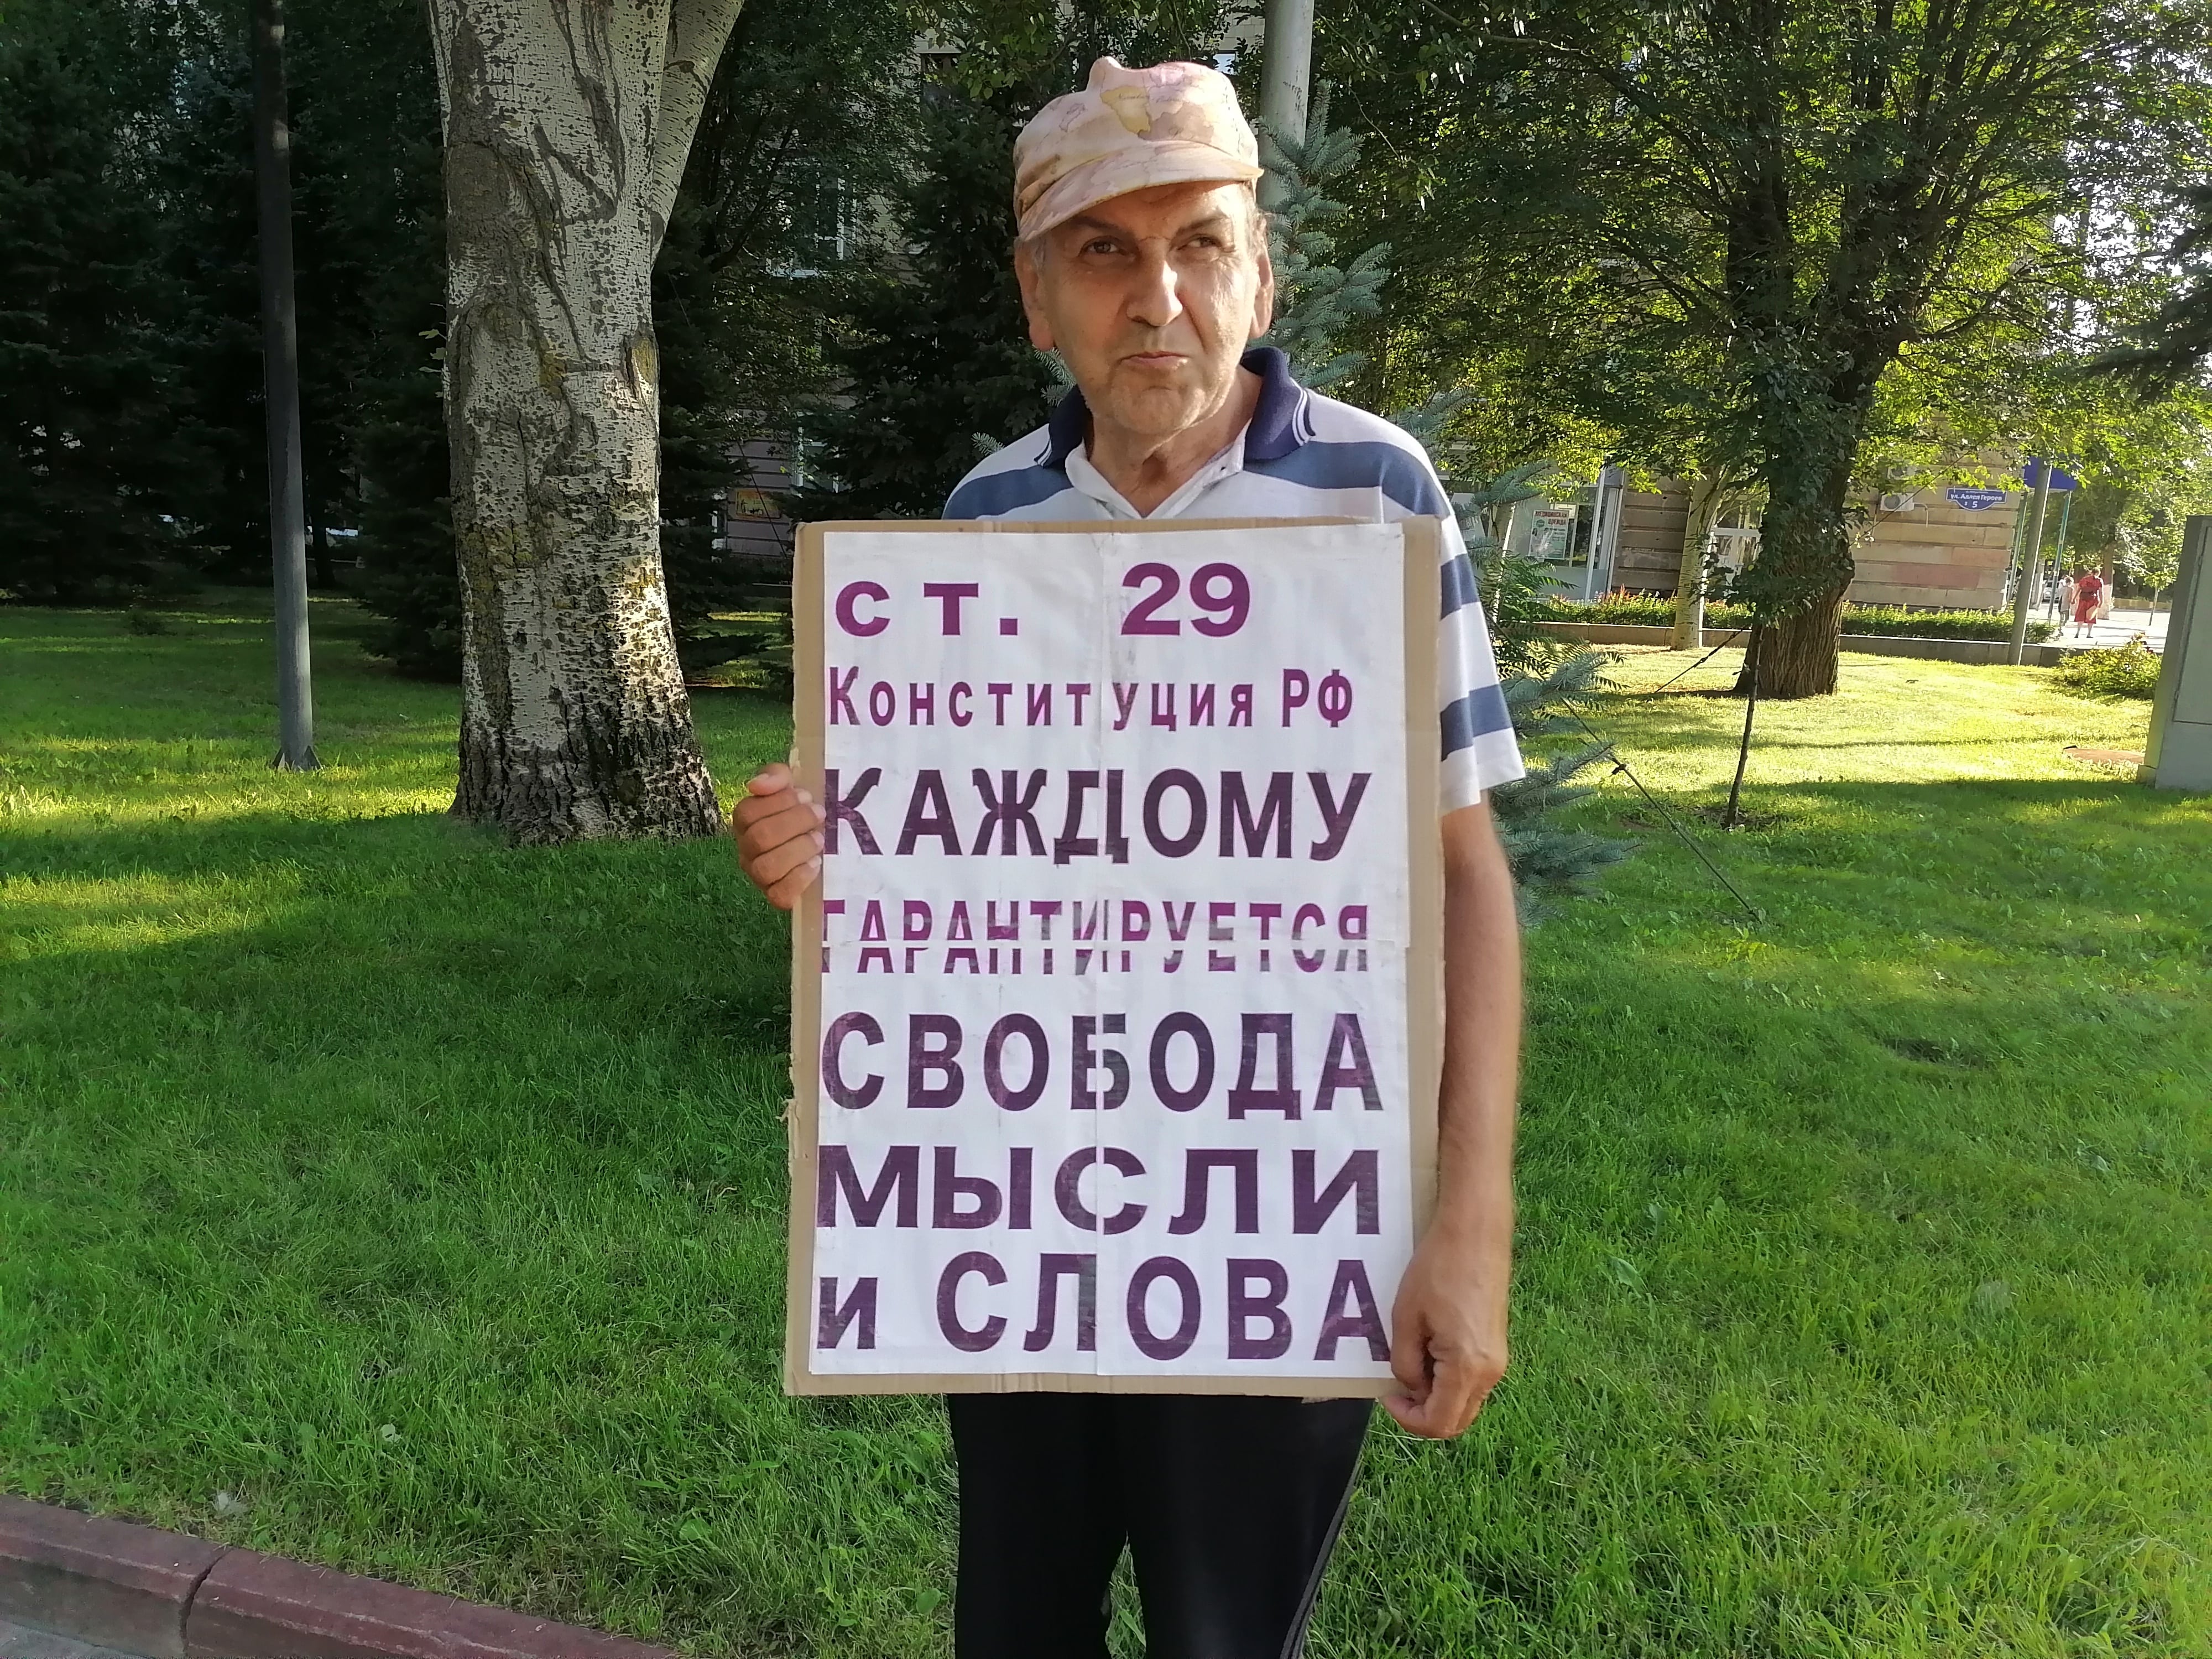 Пикет в Волгограде, 31 июля 2021 года. Фото Татьяны Филимоновой для "Кавказского узла".